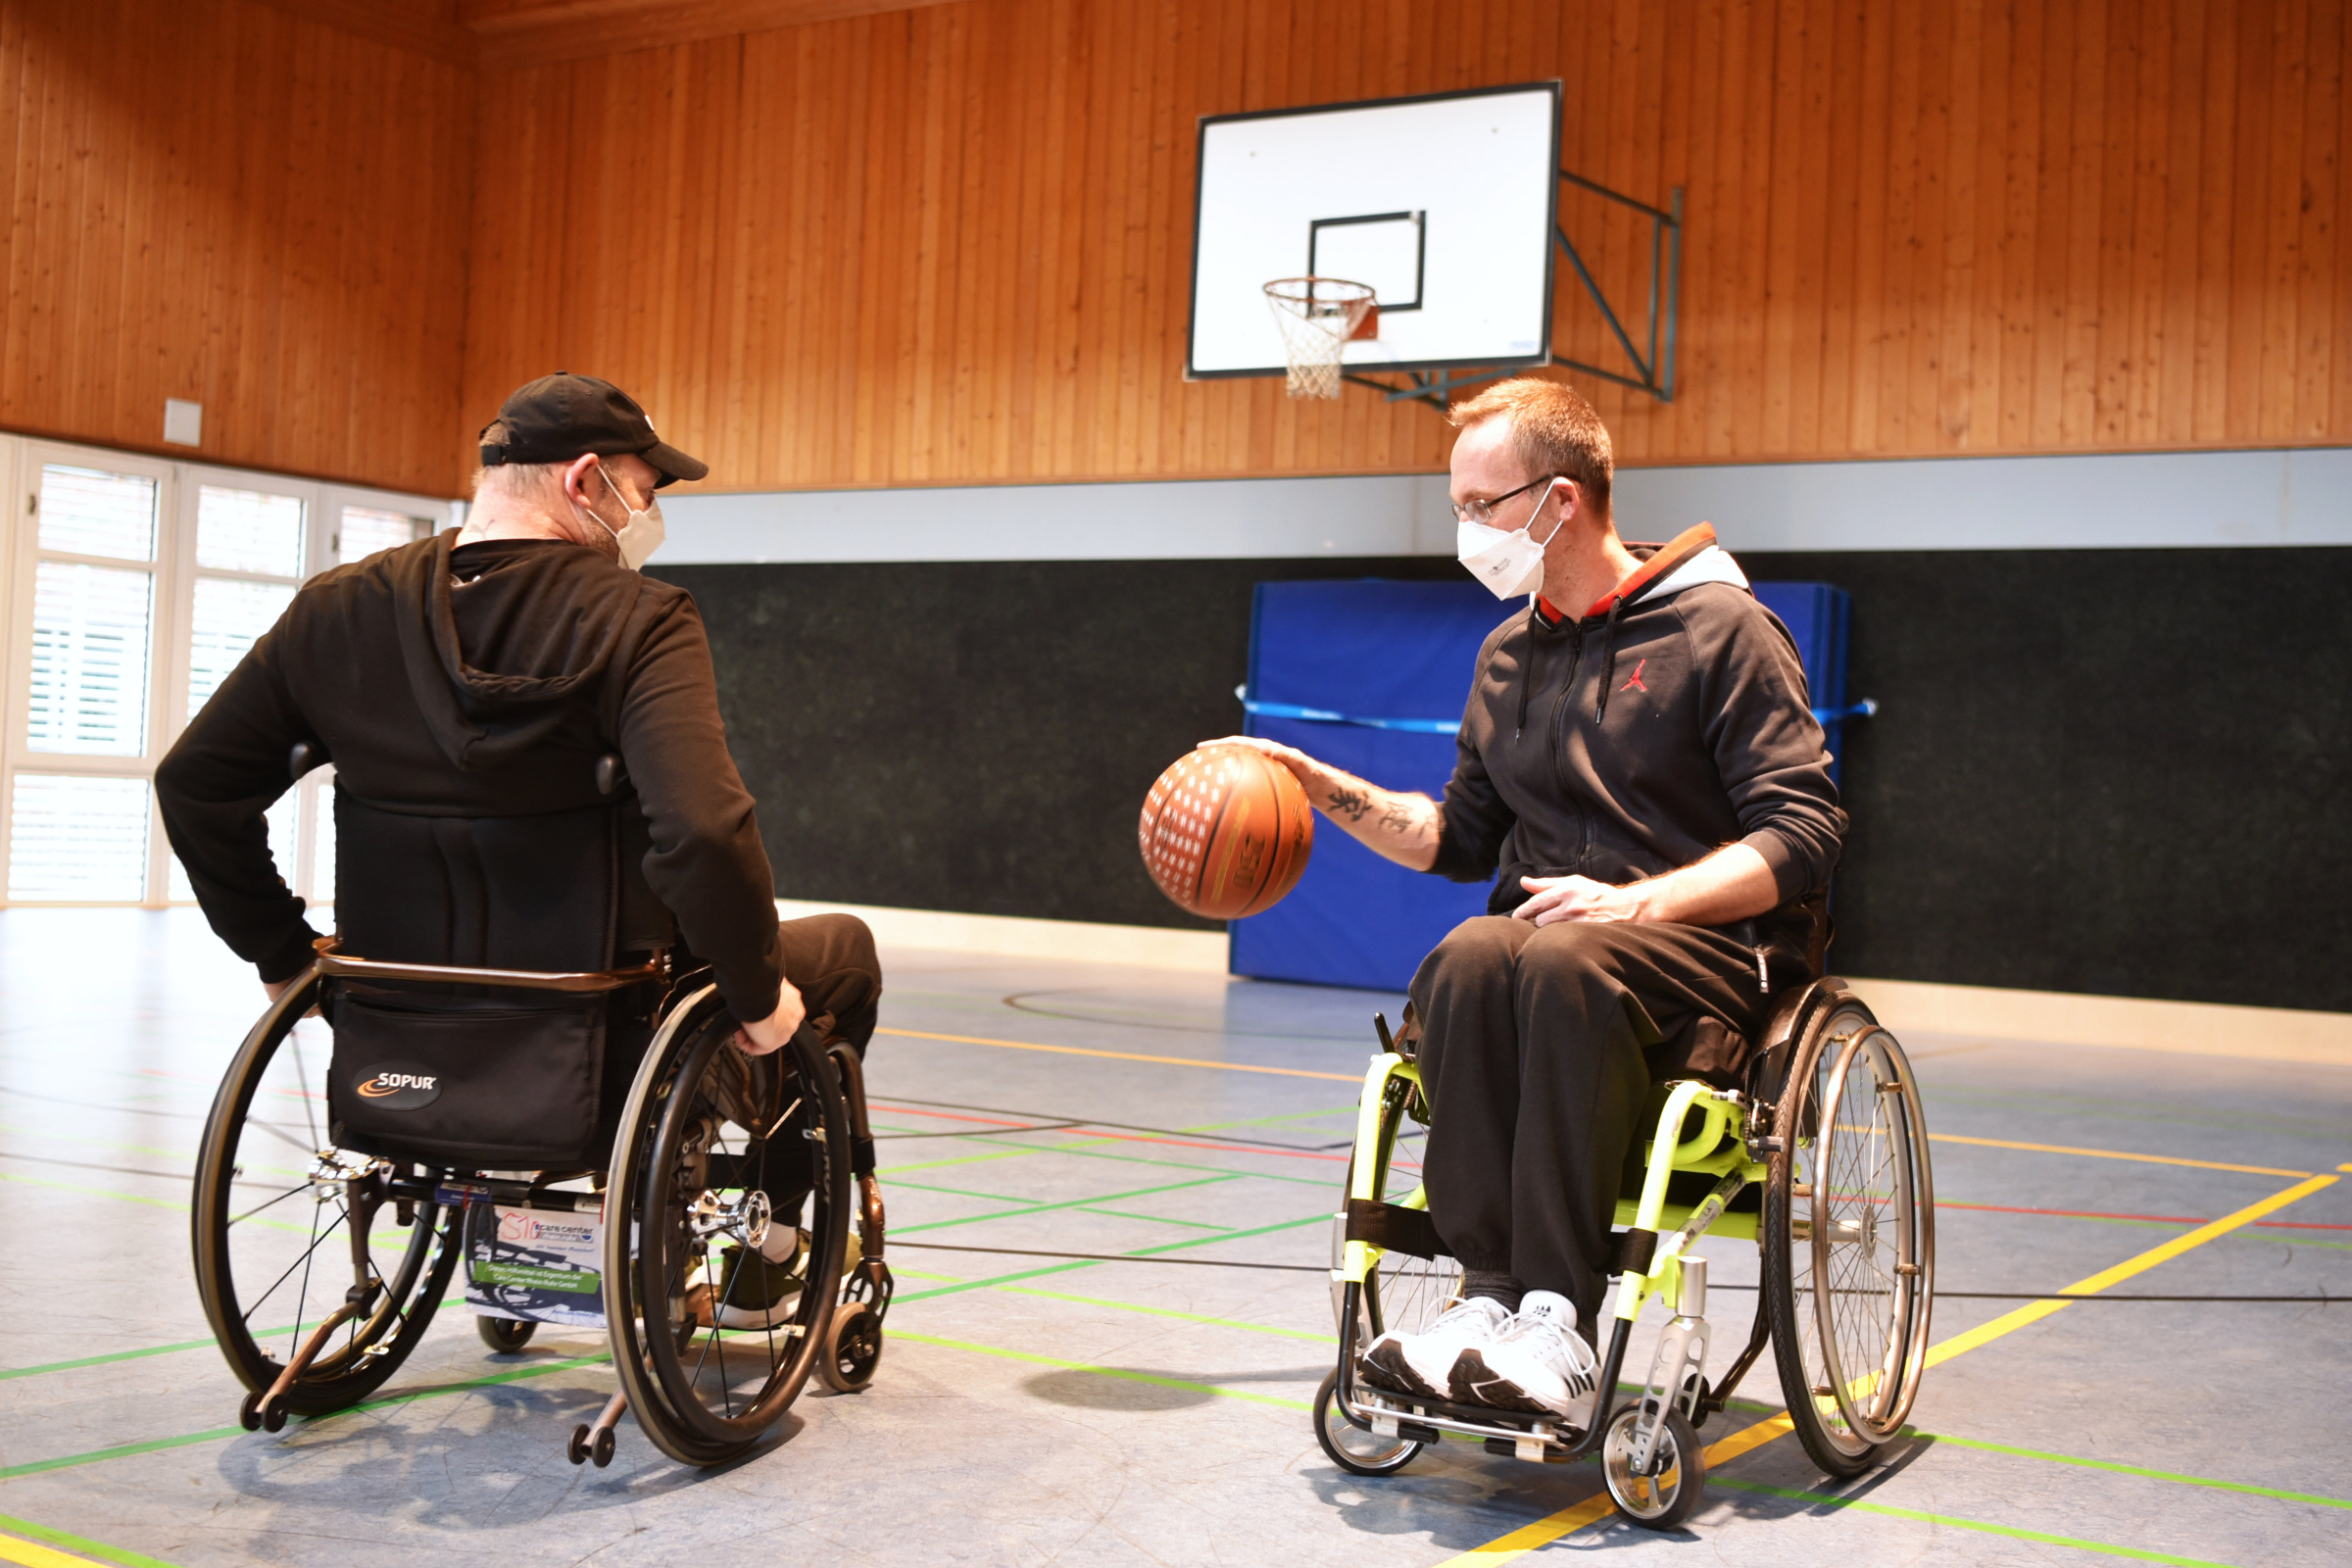 Rollstuhlbasketball zählt zu den besonders beliebten Sportarten für Menschen mit körperlichen Behinderungen oder Einschränkungen.  Bildnachweis: BG Universitätsklinikum Bergmannsheil